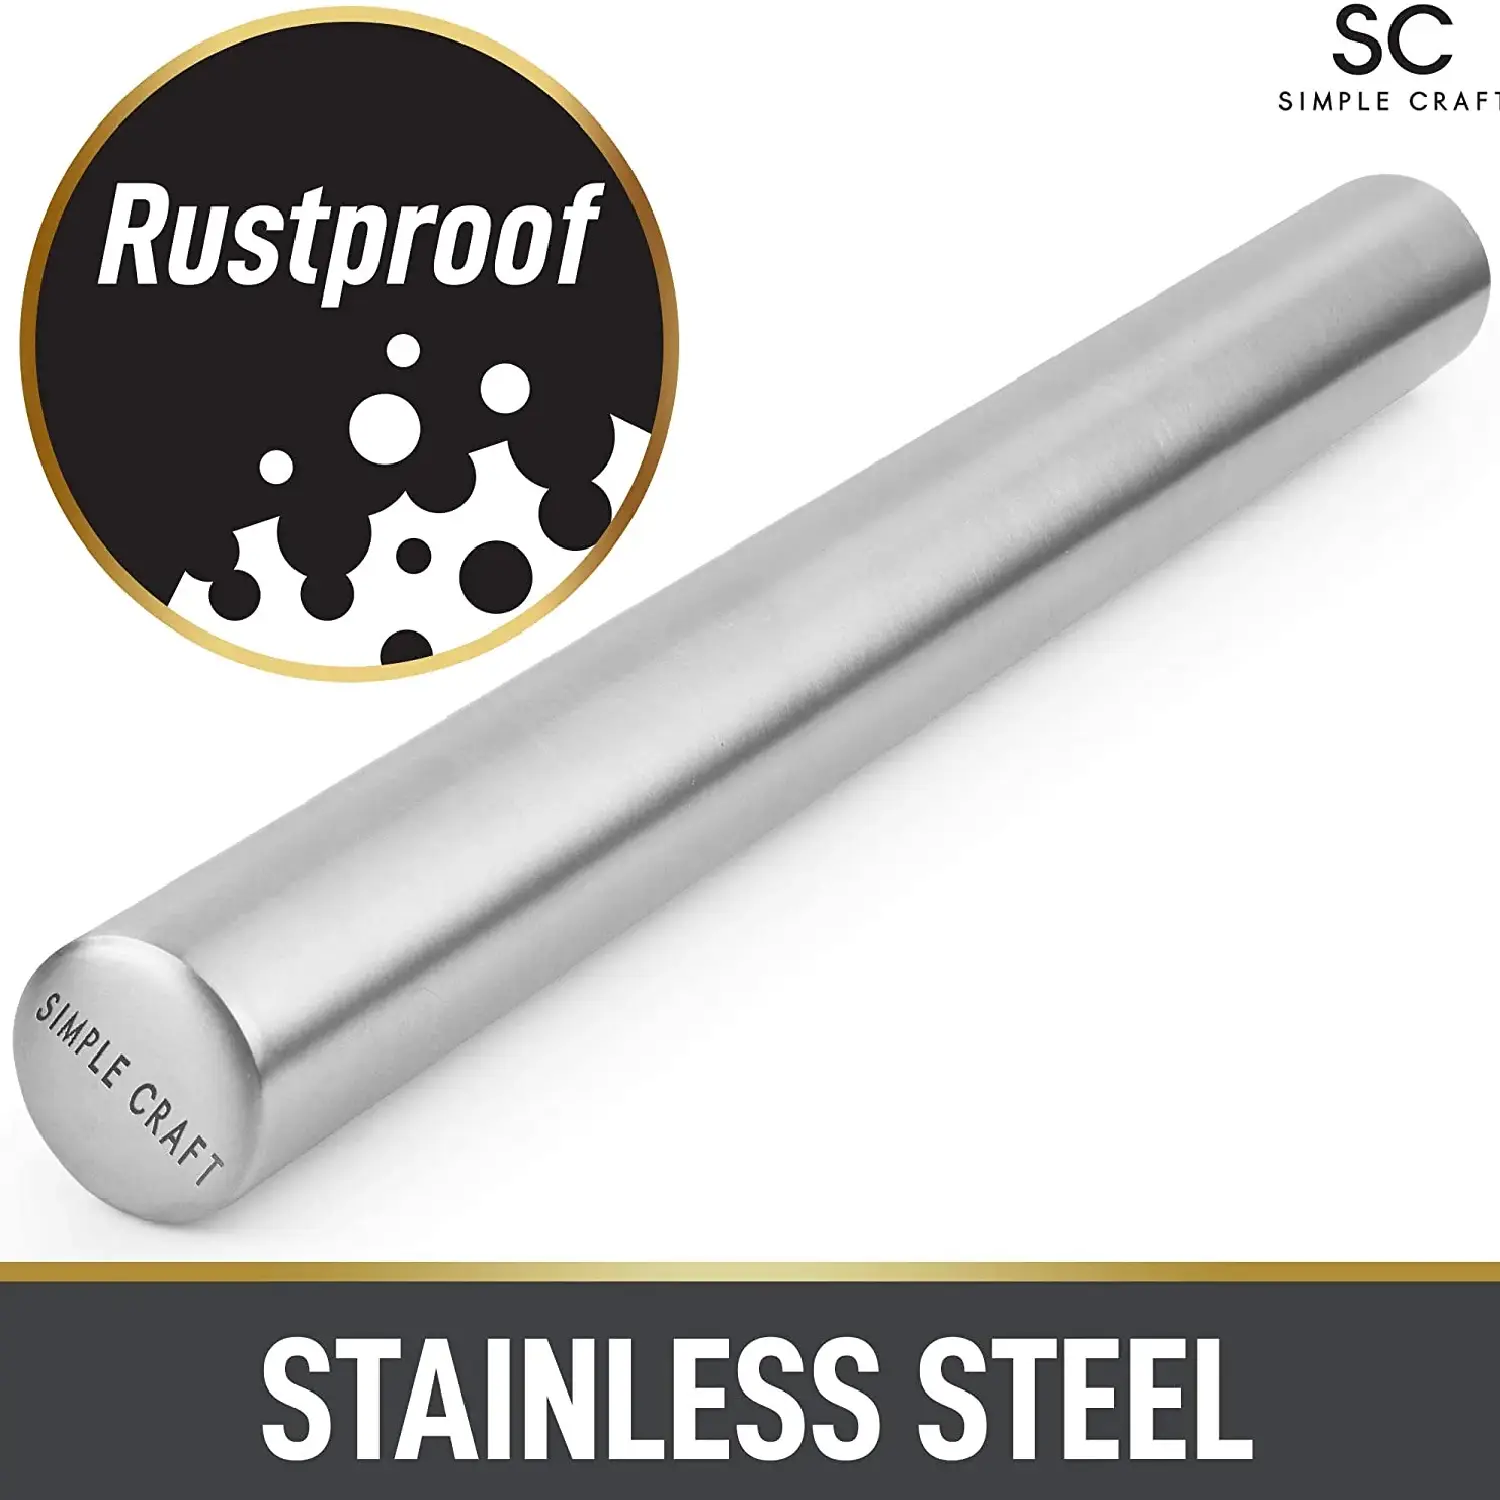 SC Steel Rolling Pin